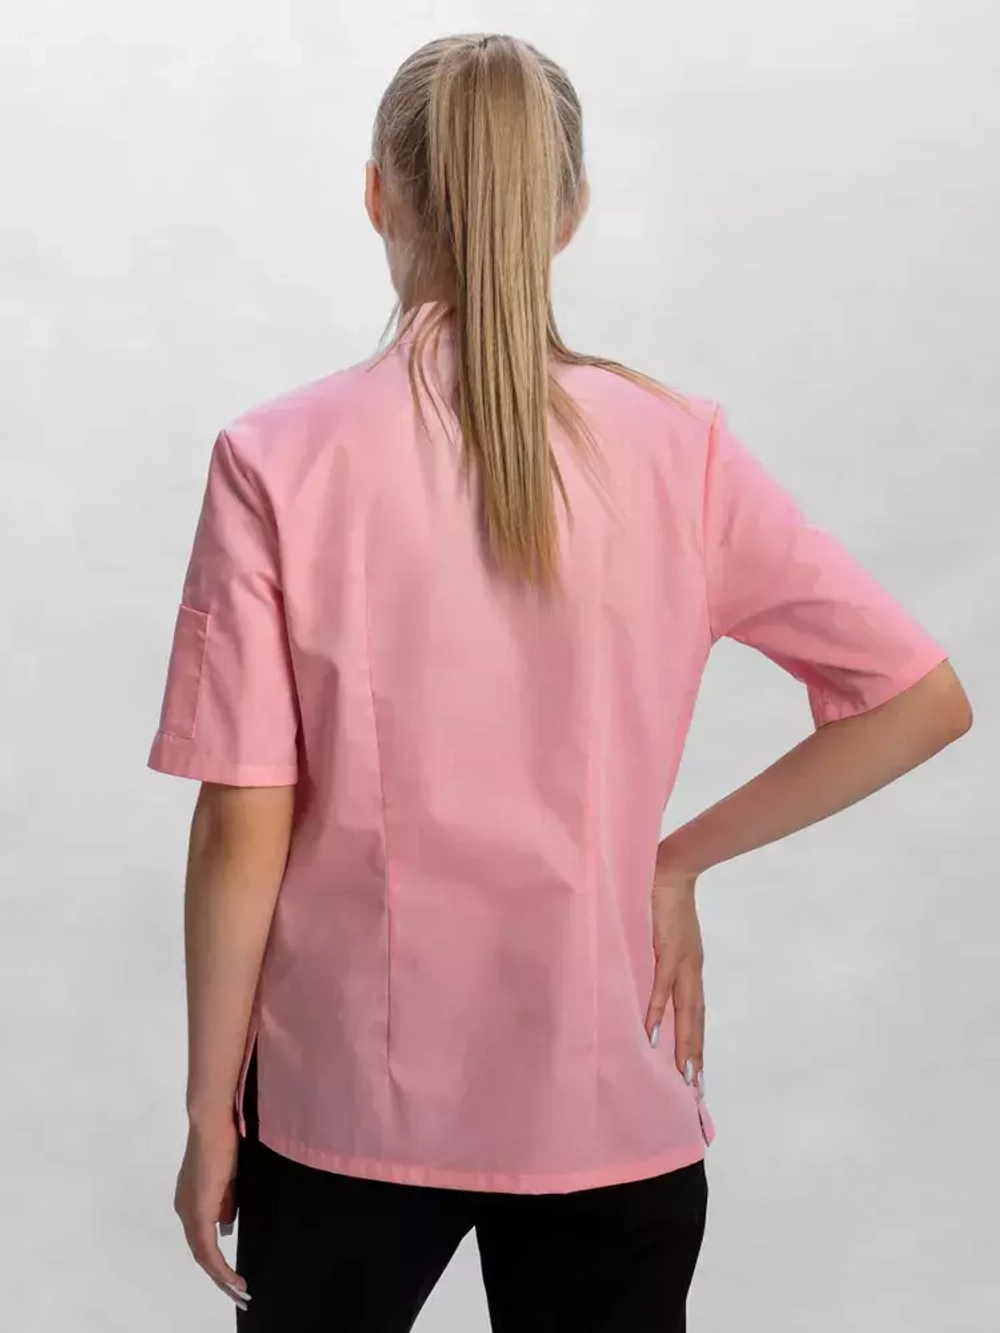 Рубашка повара "Мир" розовая женская